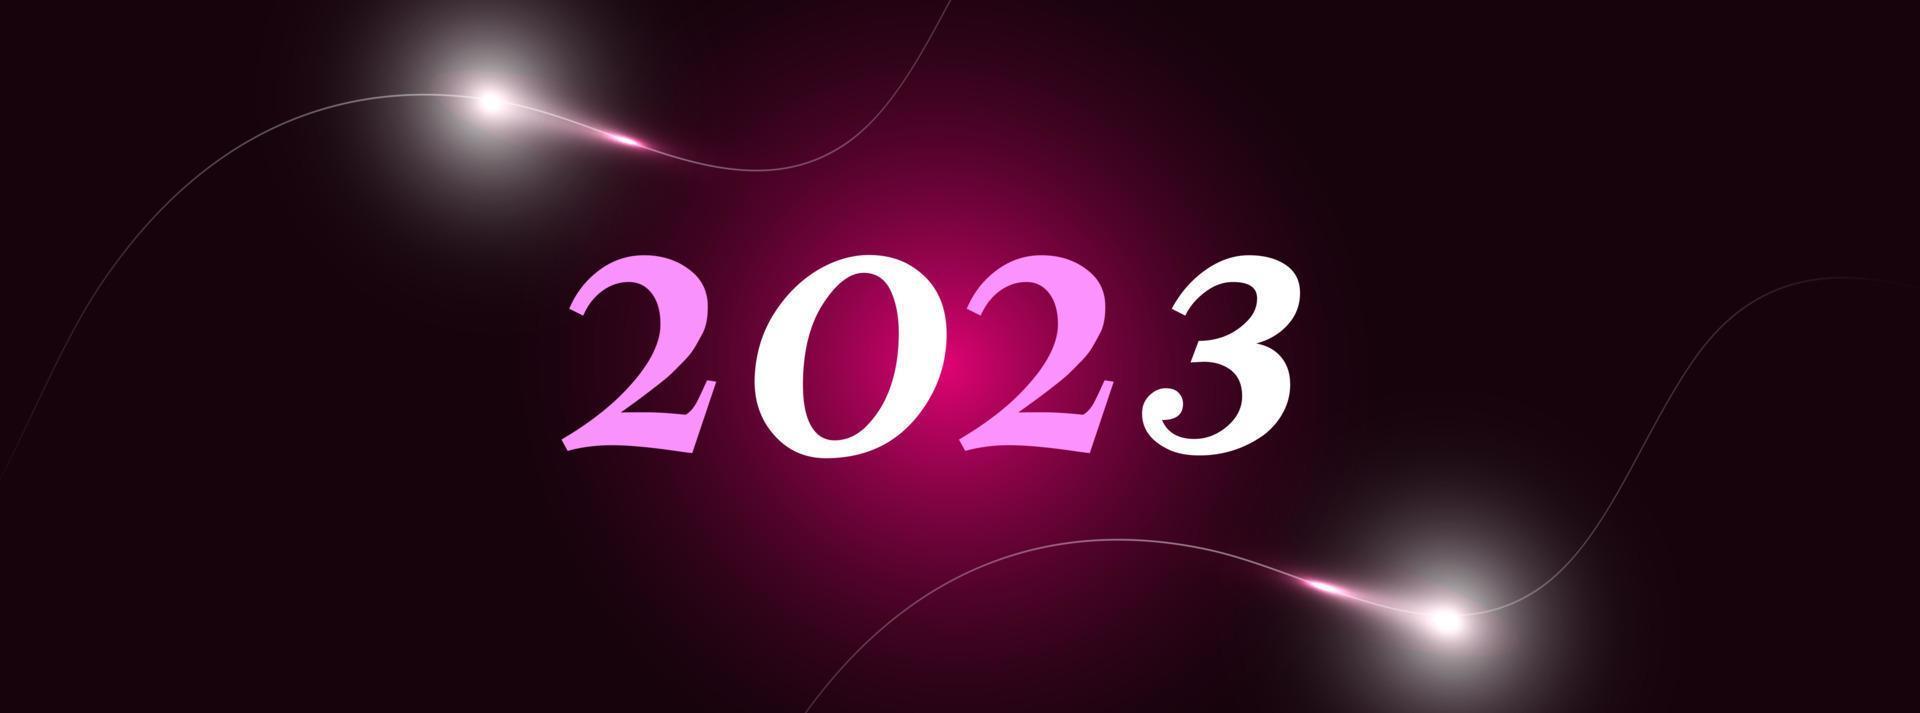 plano de fundo 2023 vetor de design de ilustração vetorial de ano novo